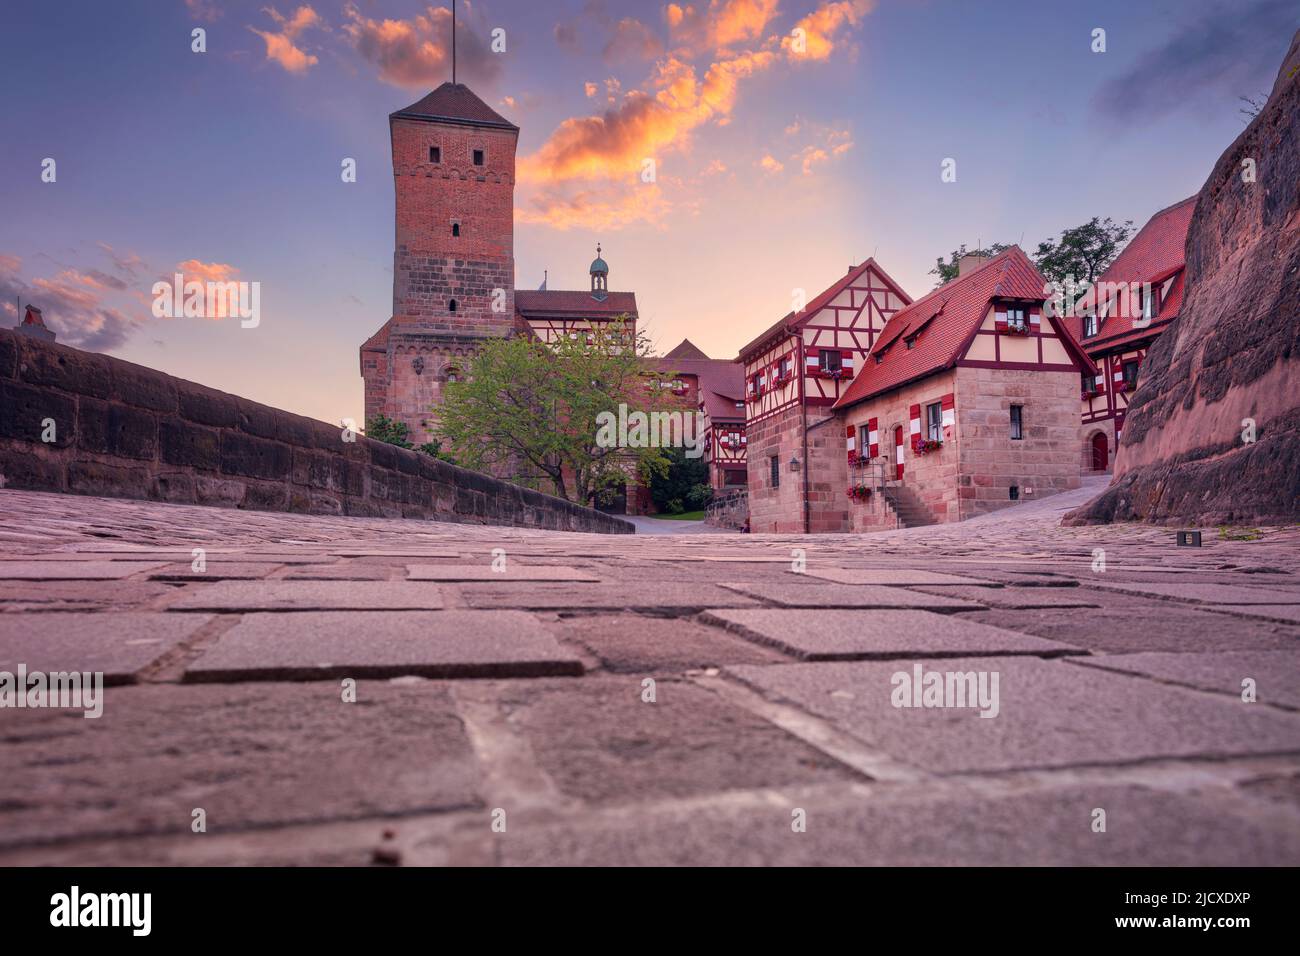 Château de Nuremberg, Nuremberg, Allemagne. Image de paysage urbain du site historique du château de Nuremberg au coucher du soleil d'été. Banque D'Images